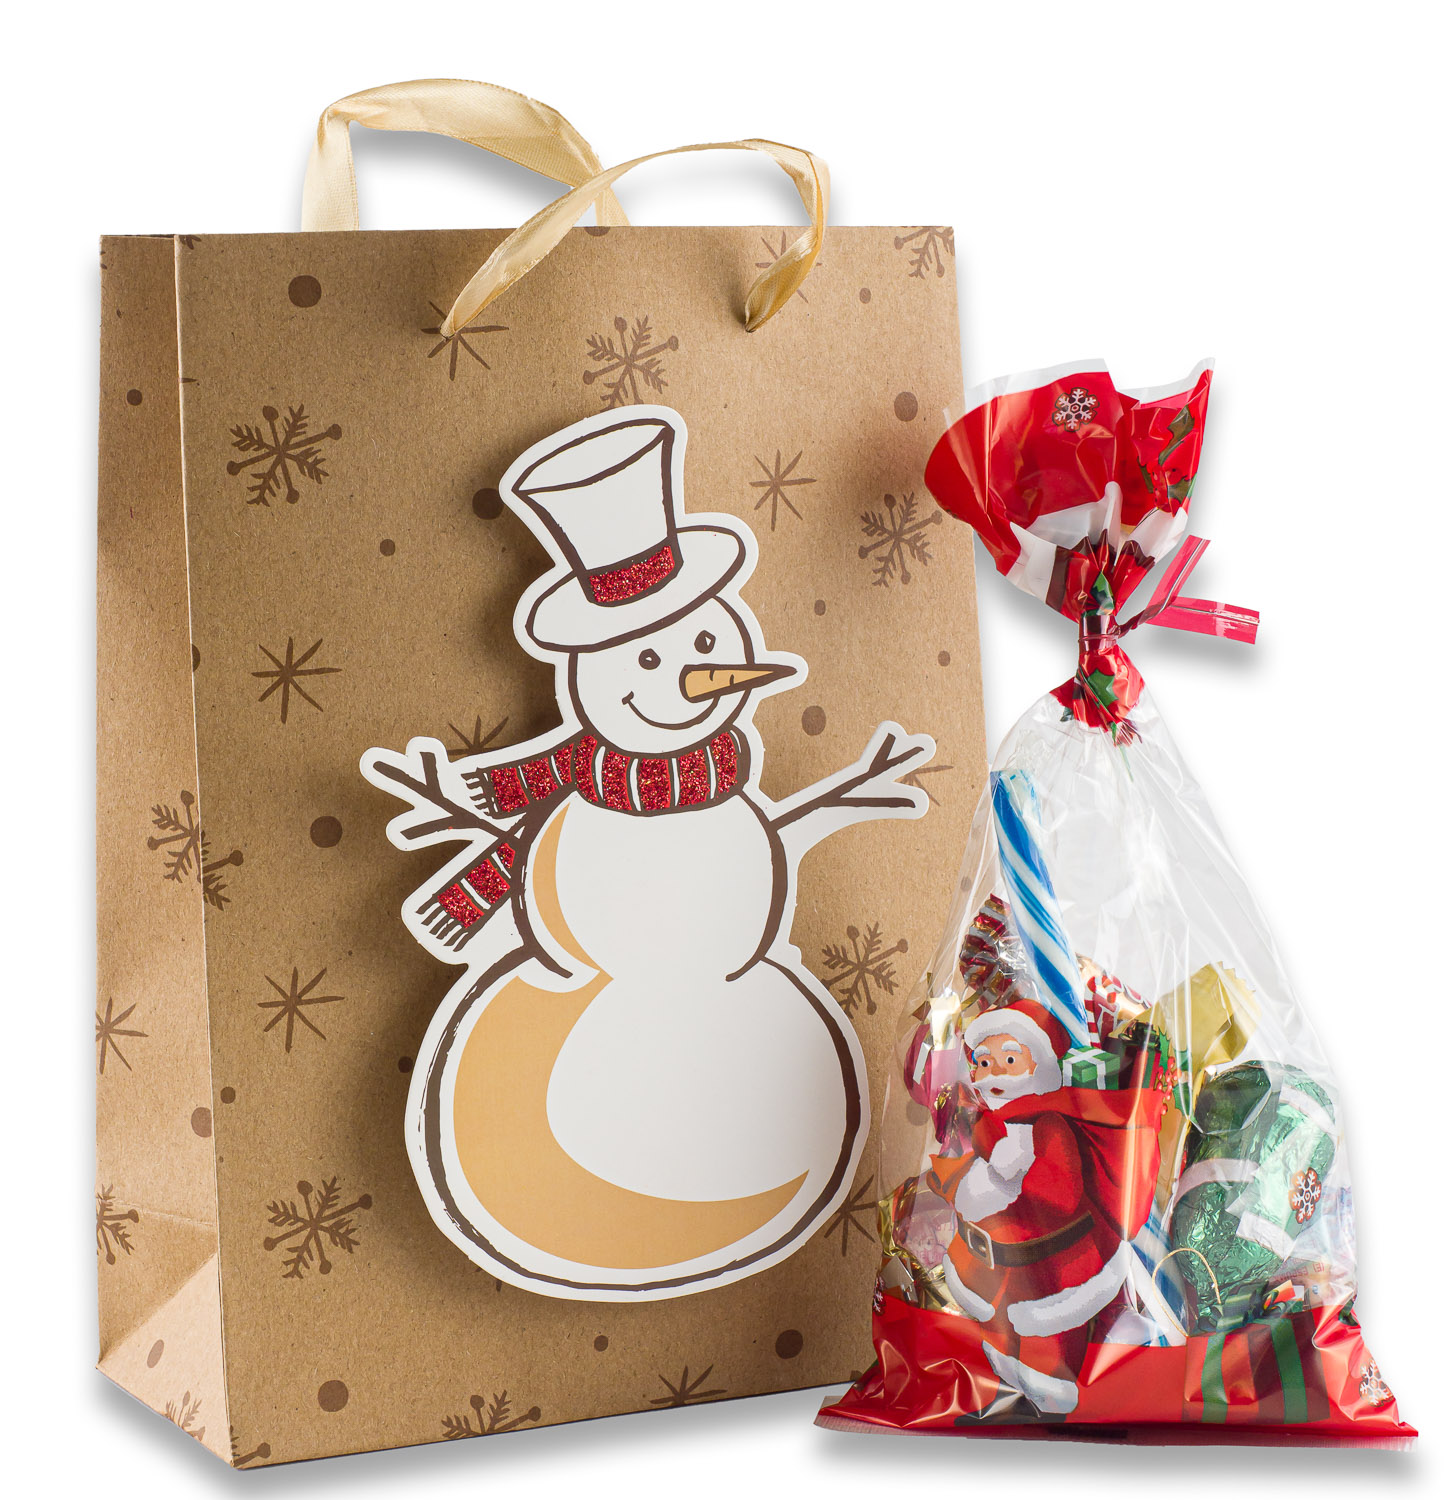 Noix 24 Sac Cadeau noel Autocollant Rond pour Bonbons Biscuits Chocolats